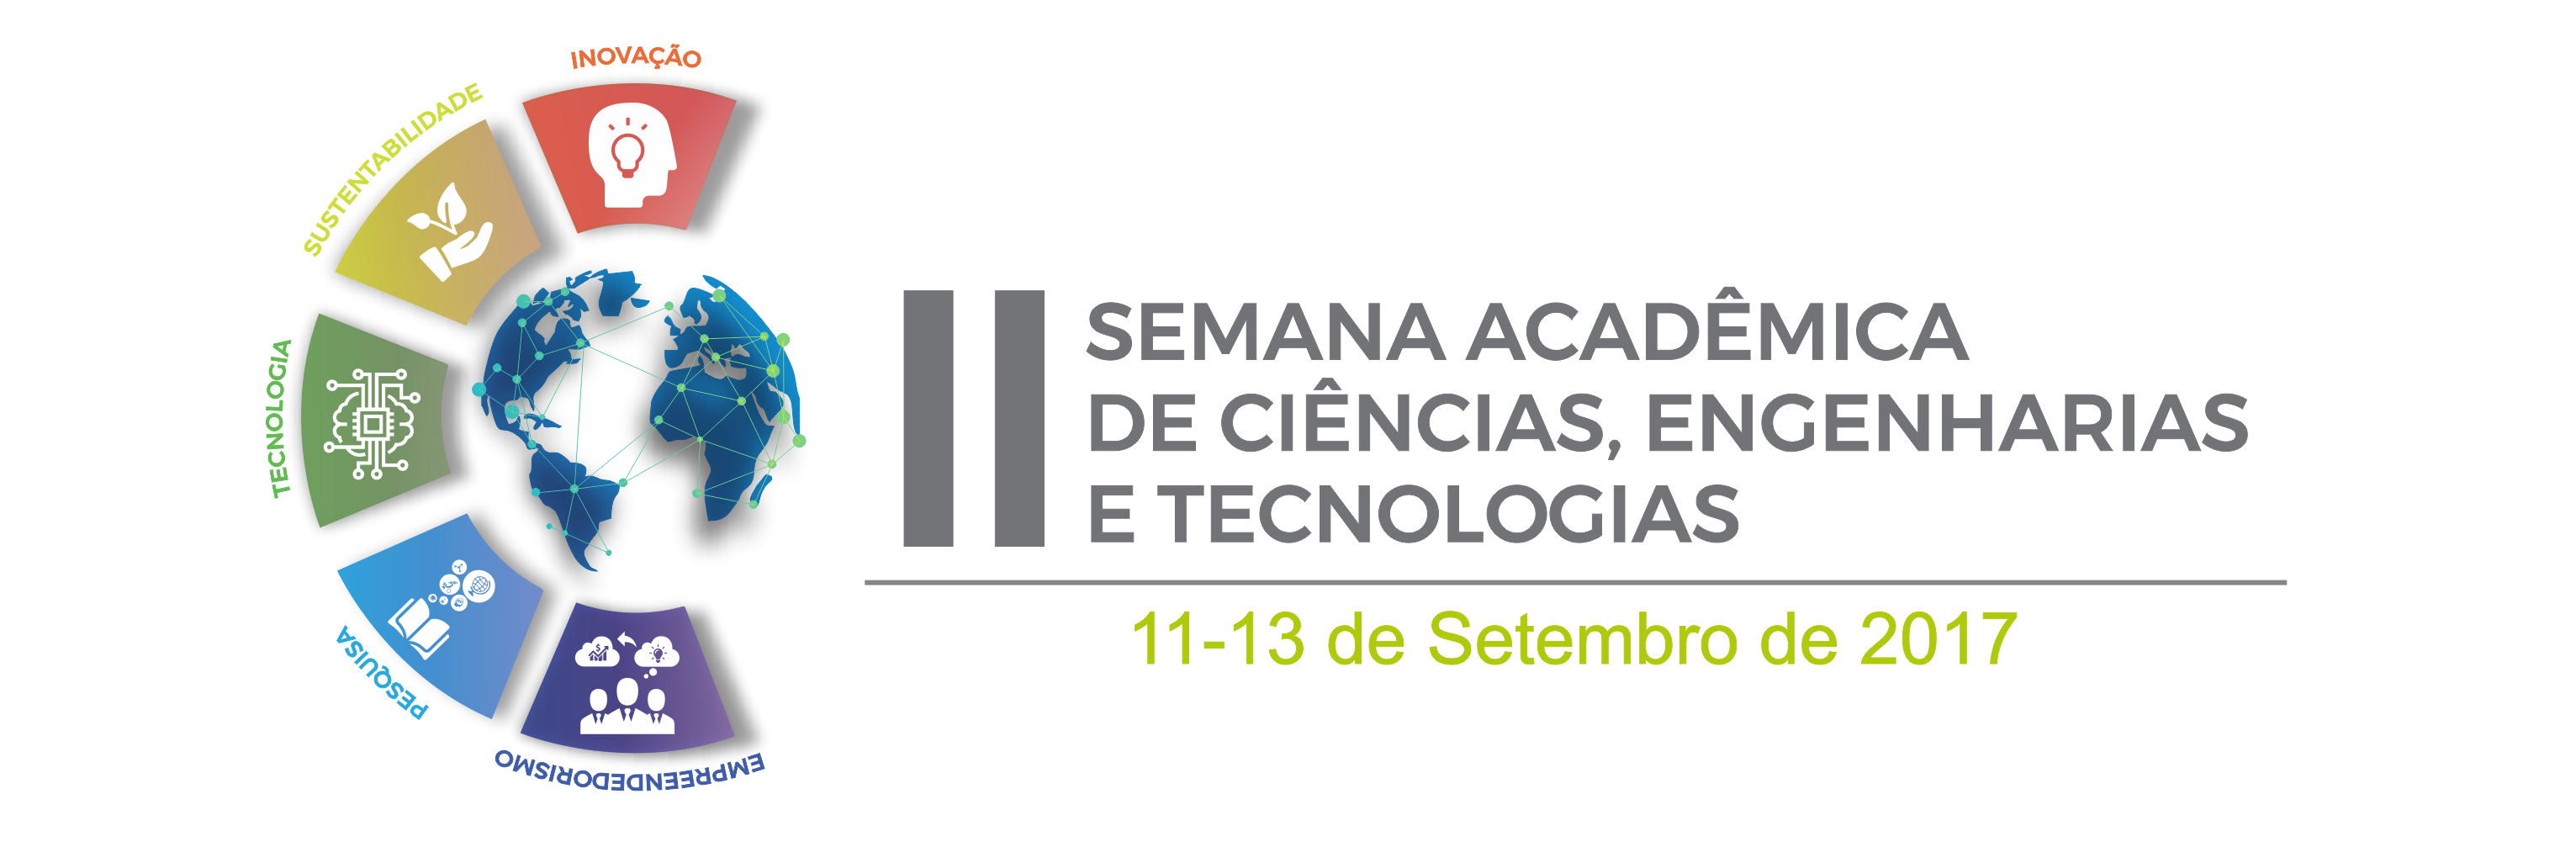 II Semana Acadêmica de Ciências, Engenharias e Tecnologias